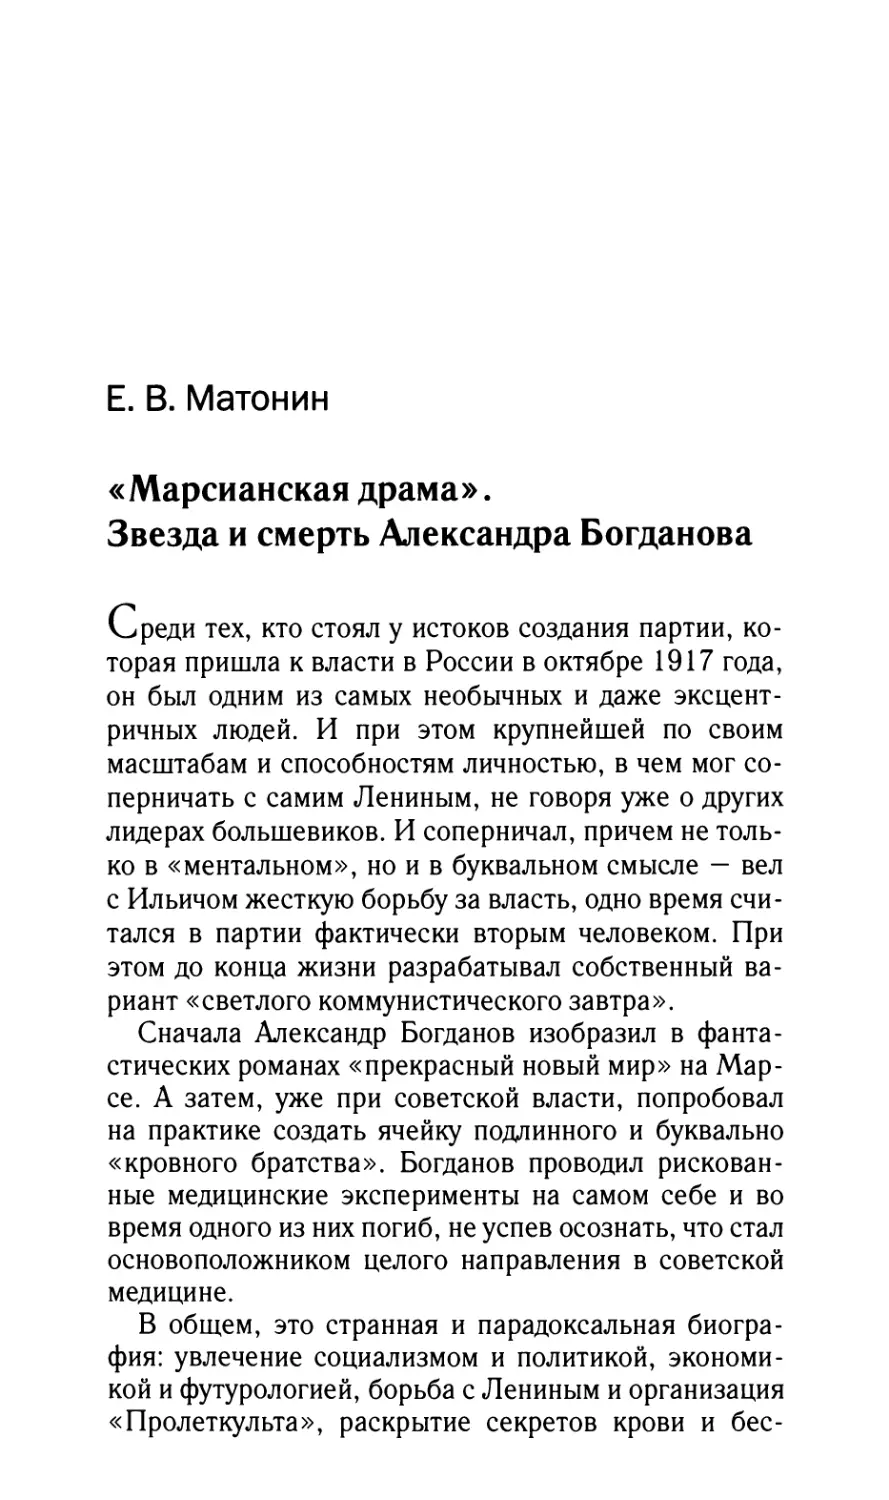 Матонин Е.В. «Марсианская драма». Звезда и смерть Александра Богданова